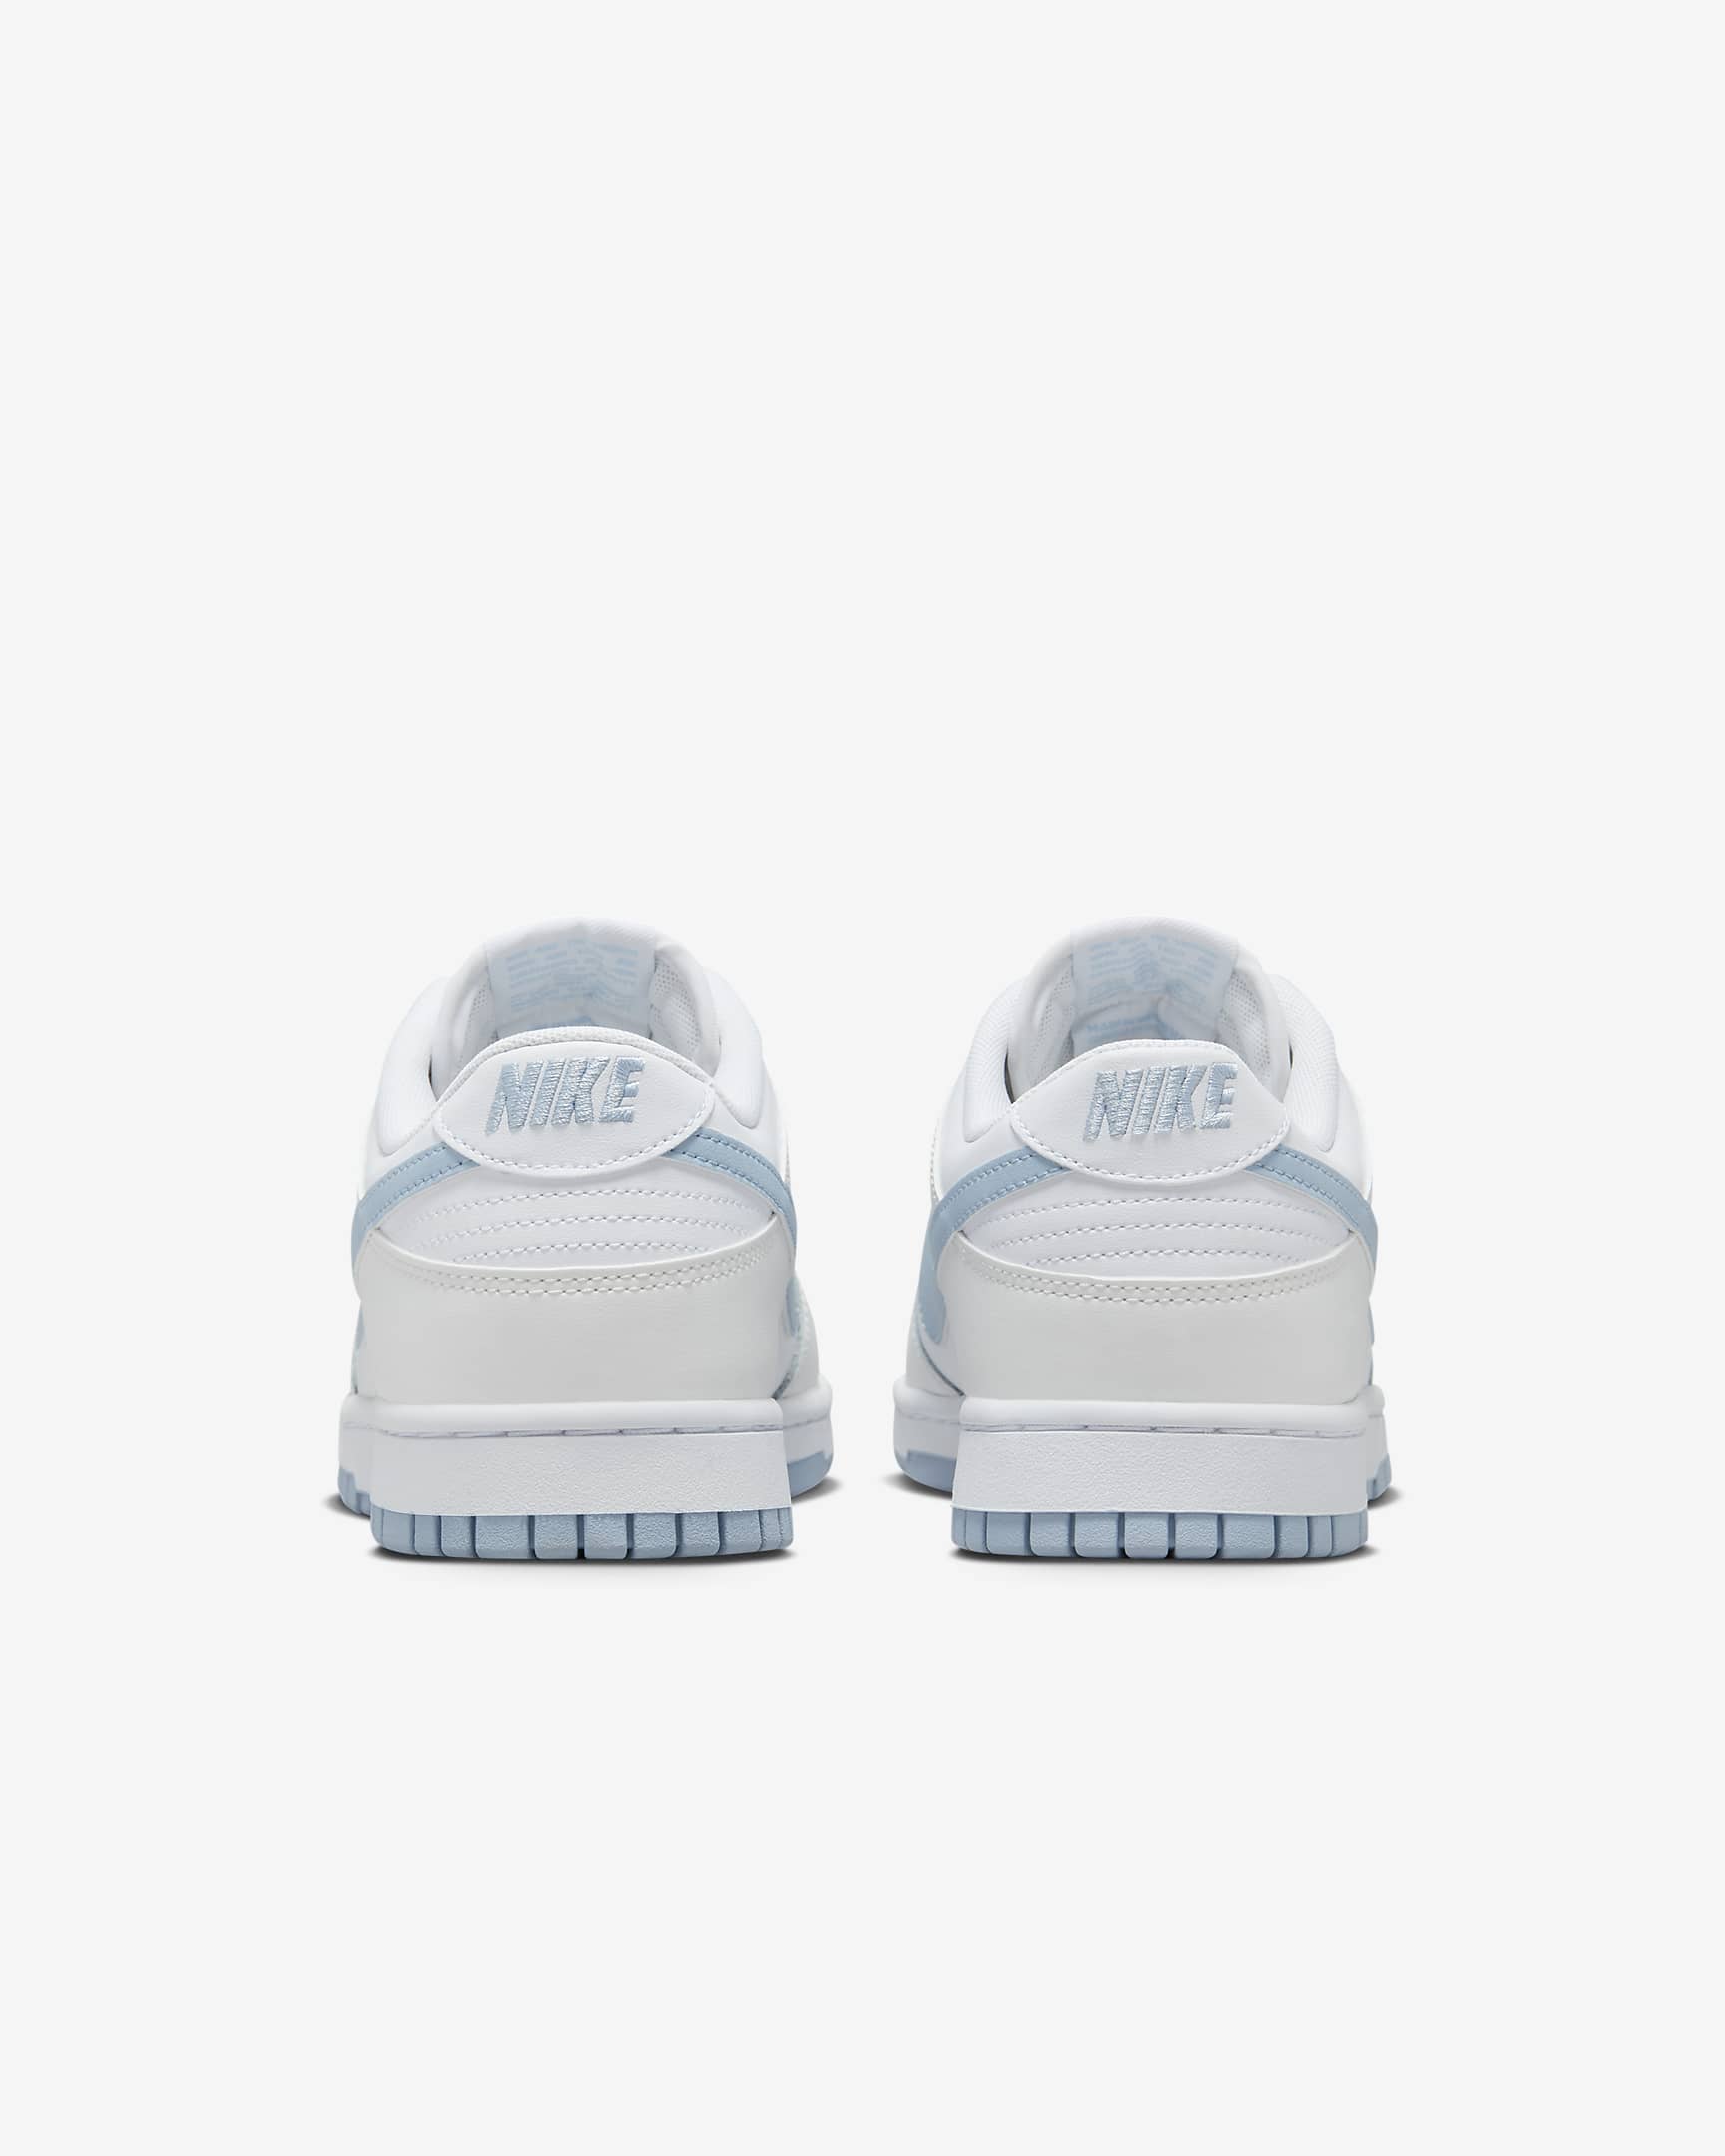 Nike Dunk Low Retro Men's Shoes - White/Summit White/Light Armoury Blue